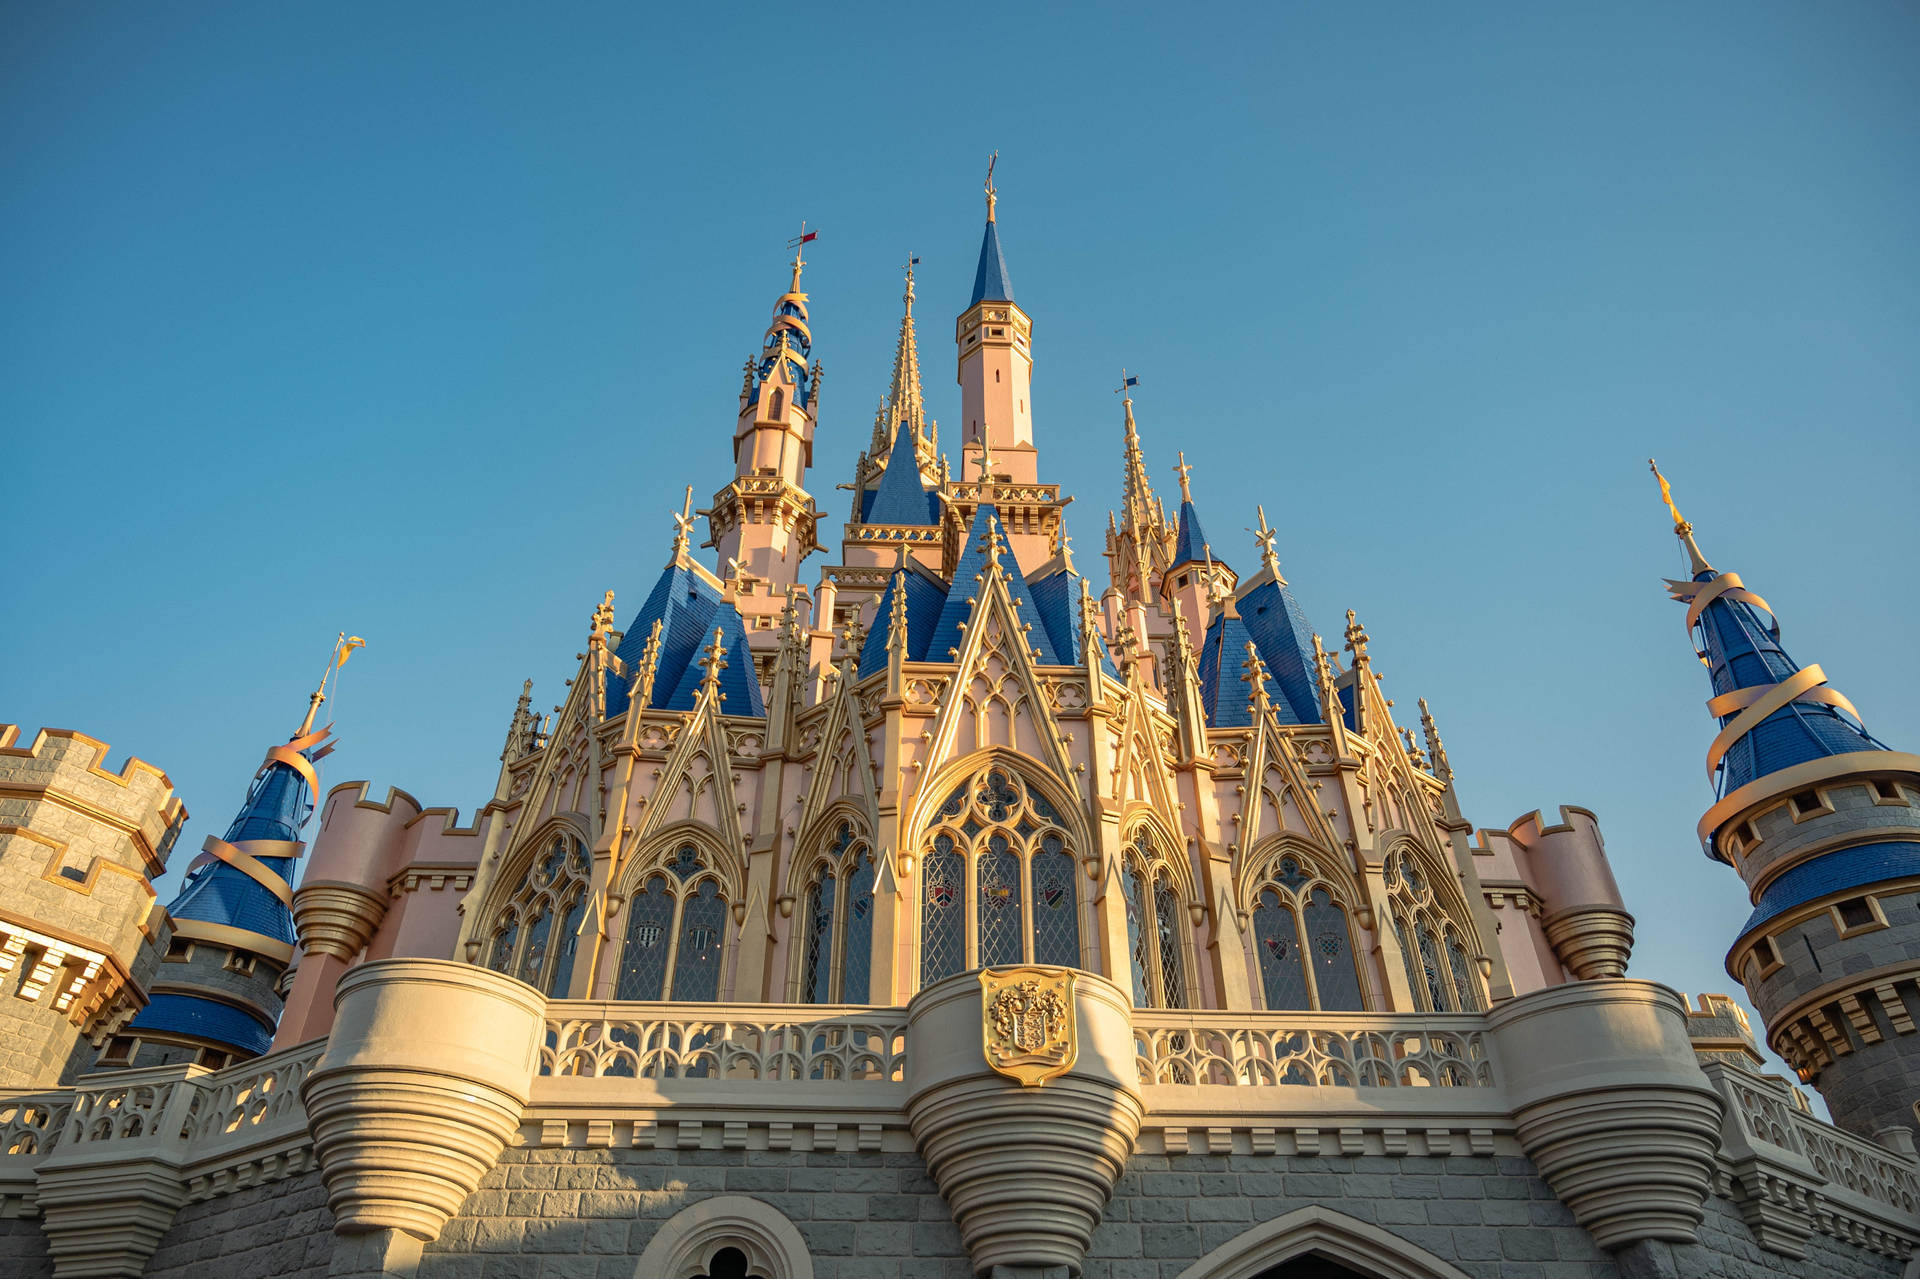 Low-angle Castle Walt Disney World Desktop